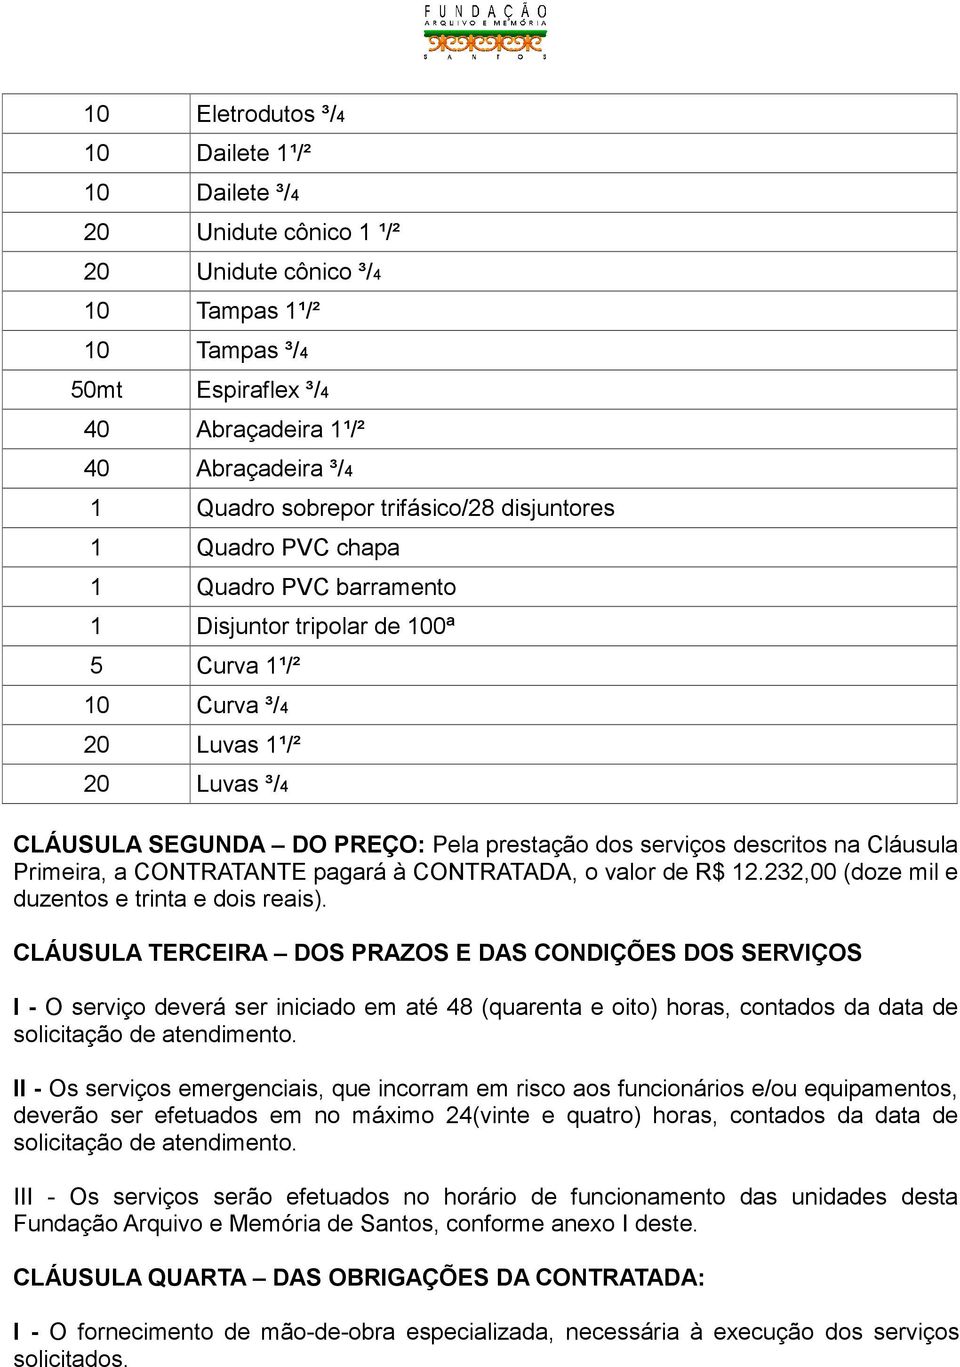 prestação dos serviços descritos na Cláusula Primeira, a CONTRATANTE pagará à CONTRATADA, o valor de R$ 12.232,00 (doze mil e duzentos e trinta e dois reais).